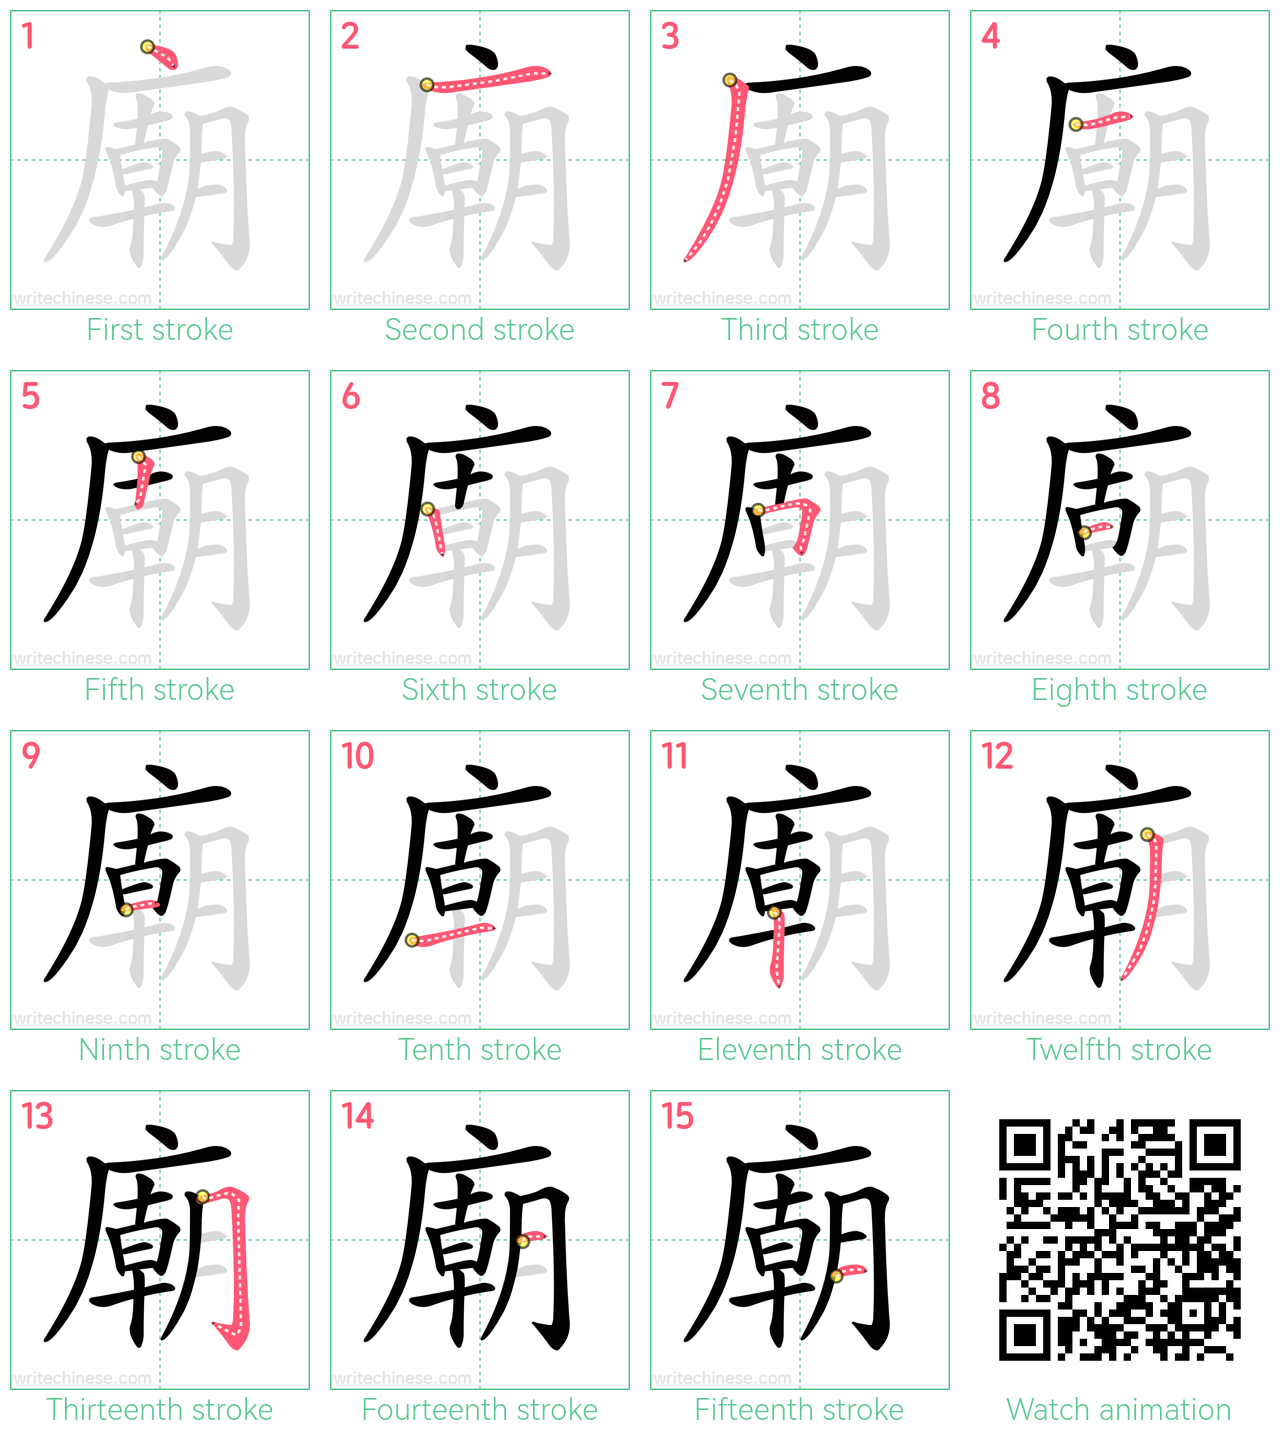 廟 step-by-step stroke order diagrams